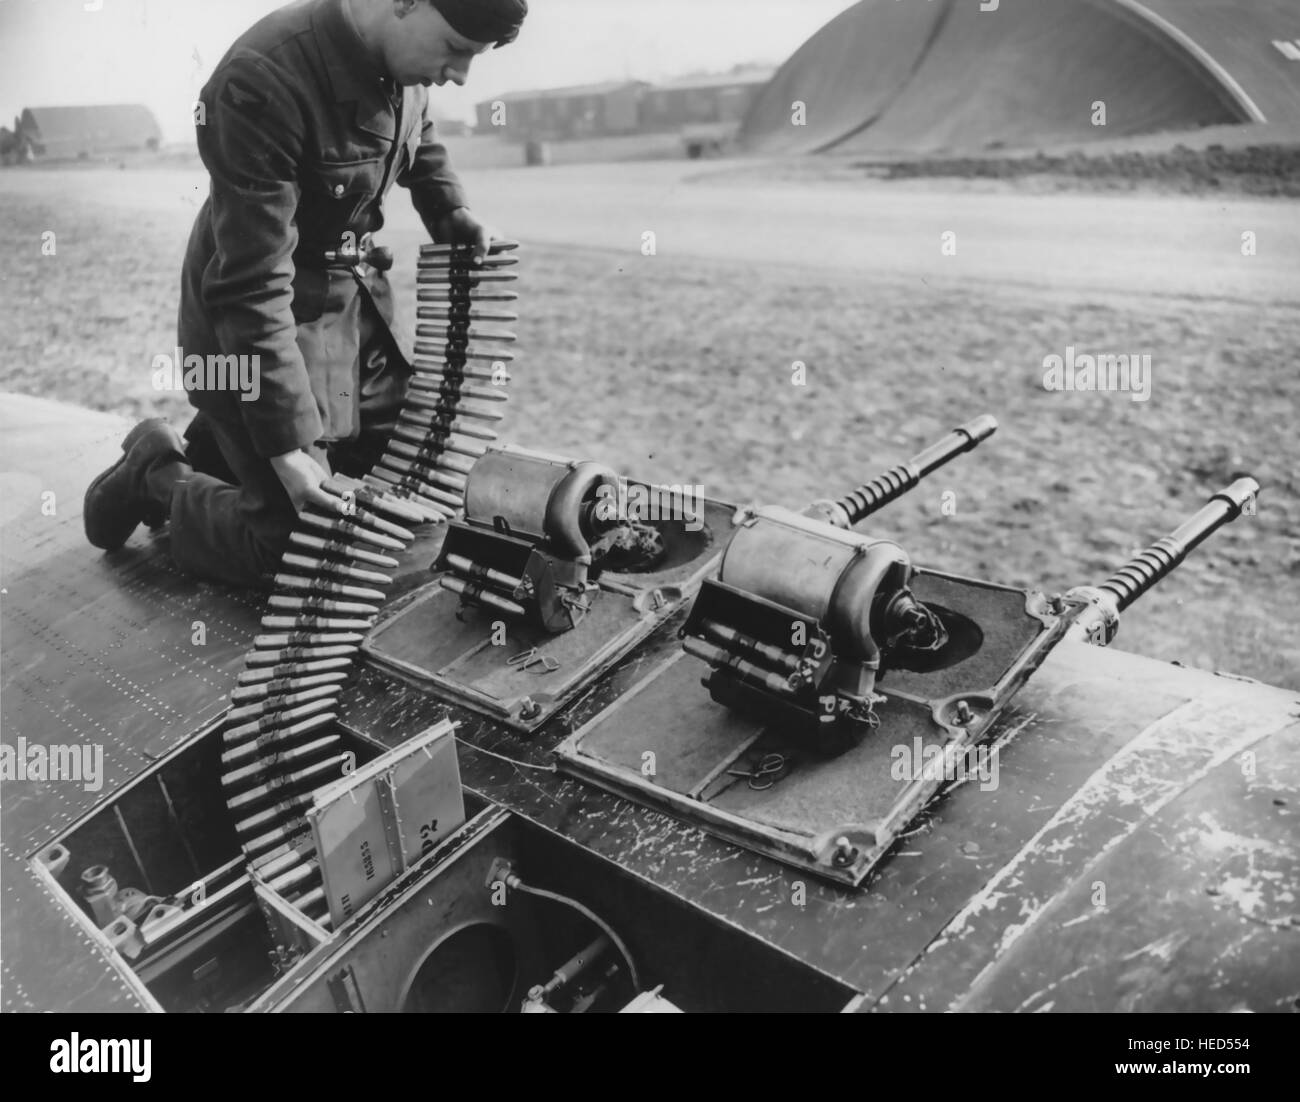 Chargement de l'Armurerie ARMEMENT SPITFIRE Hispano cannon probablement dans l'aile d'un Spitfire Mk Vc sur 1944 Banque D'Images